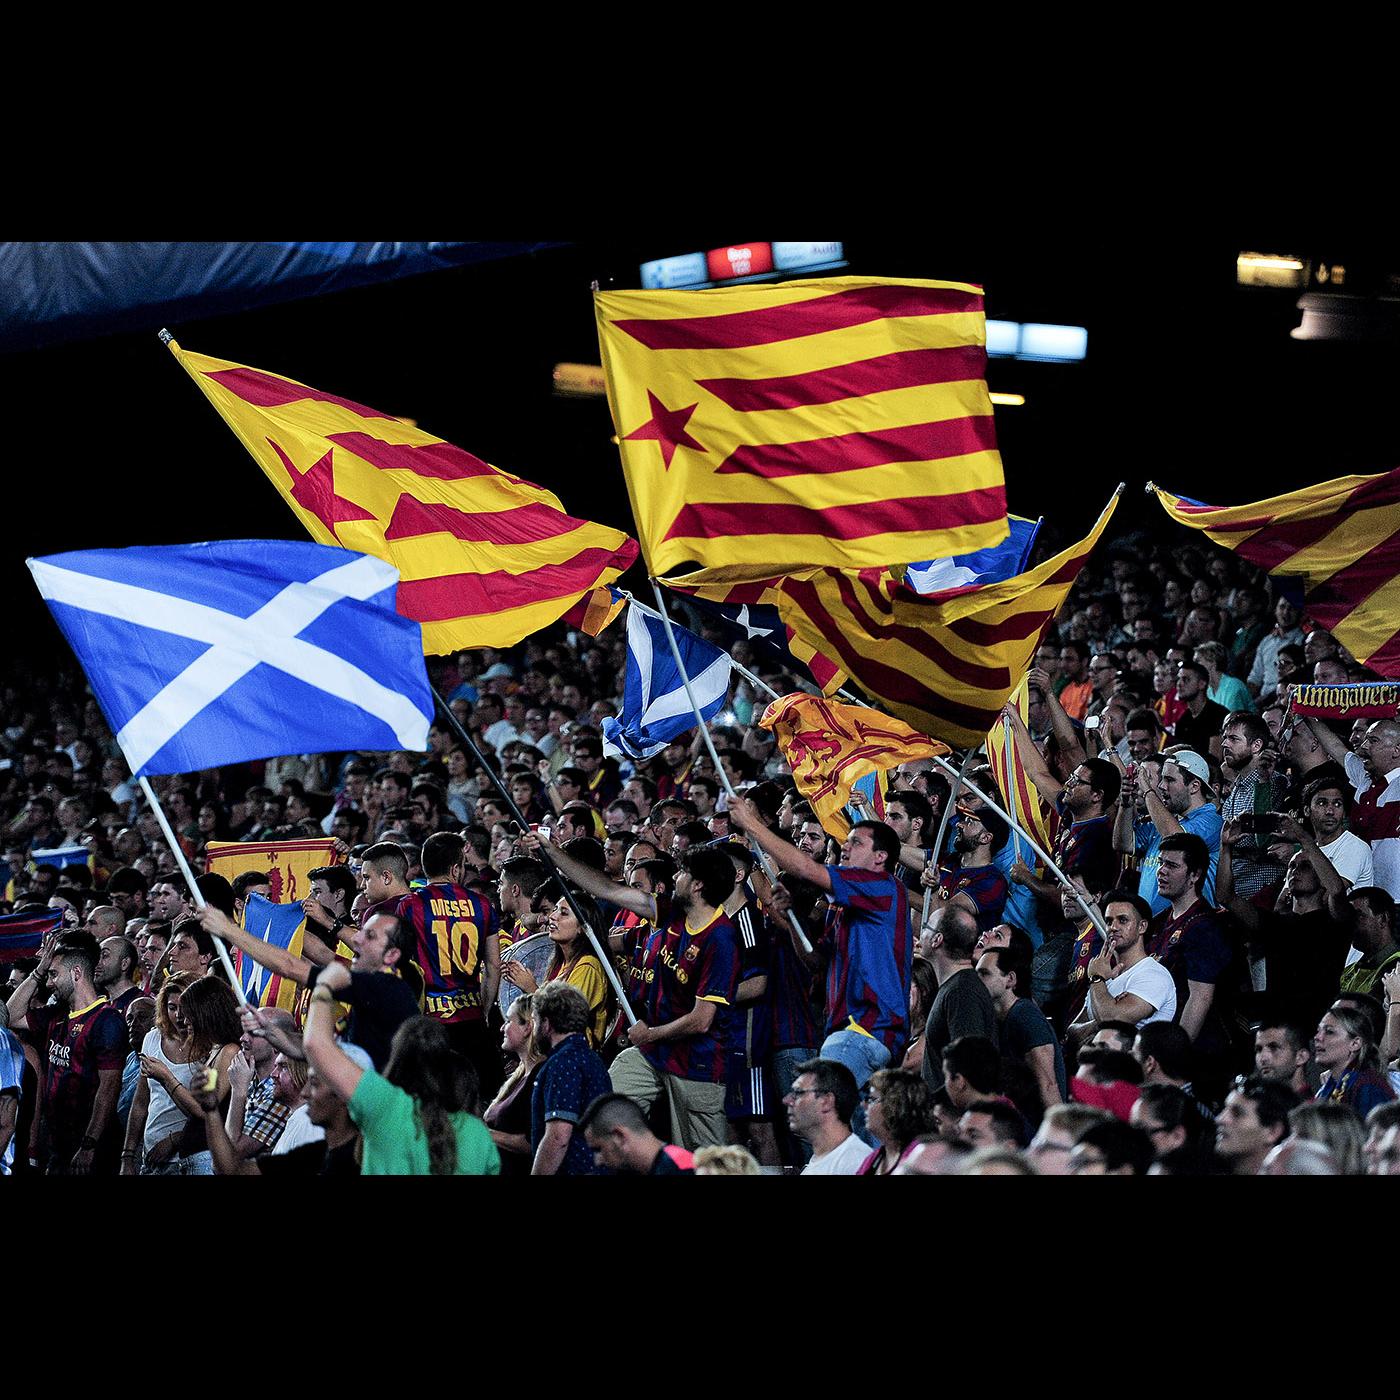 Hinchas del Barcelona en el Camp Nou durante el partido por la Champions League Barcelona-Apoel, el 17 de setiembre de 2014. · Foto: Josep Lago, AFP